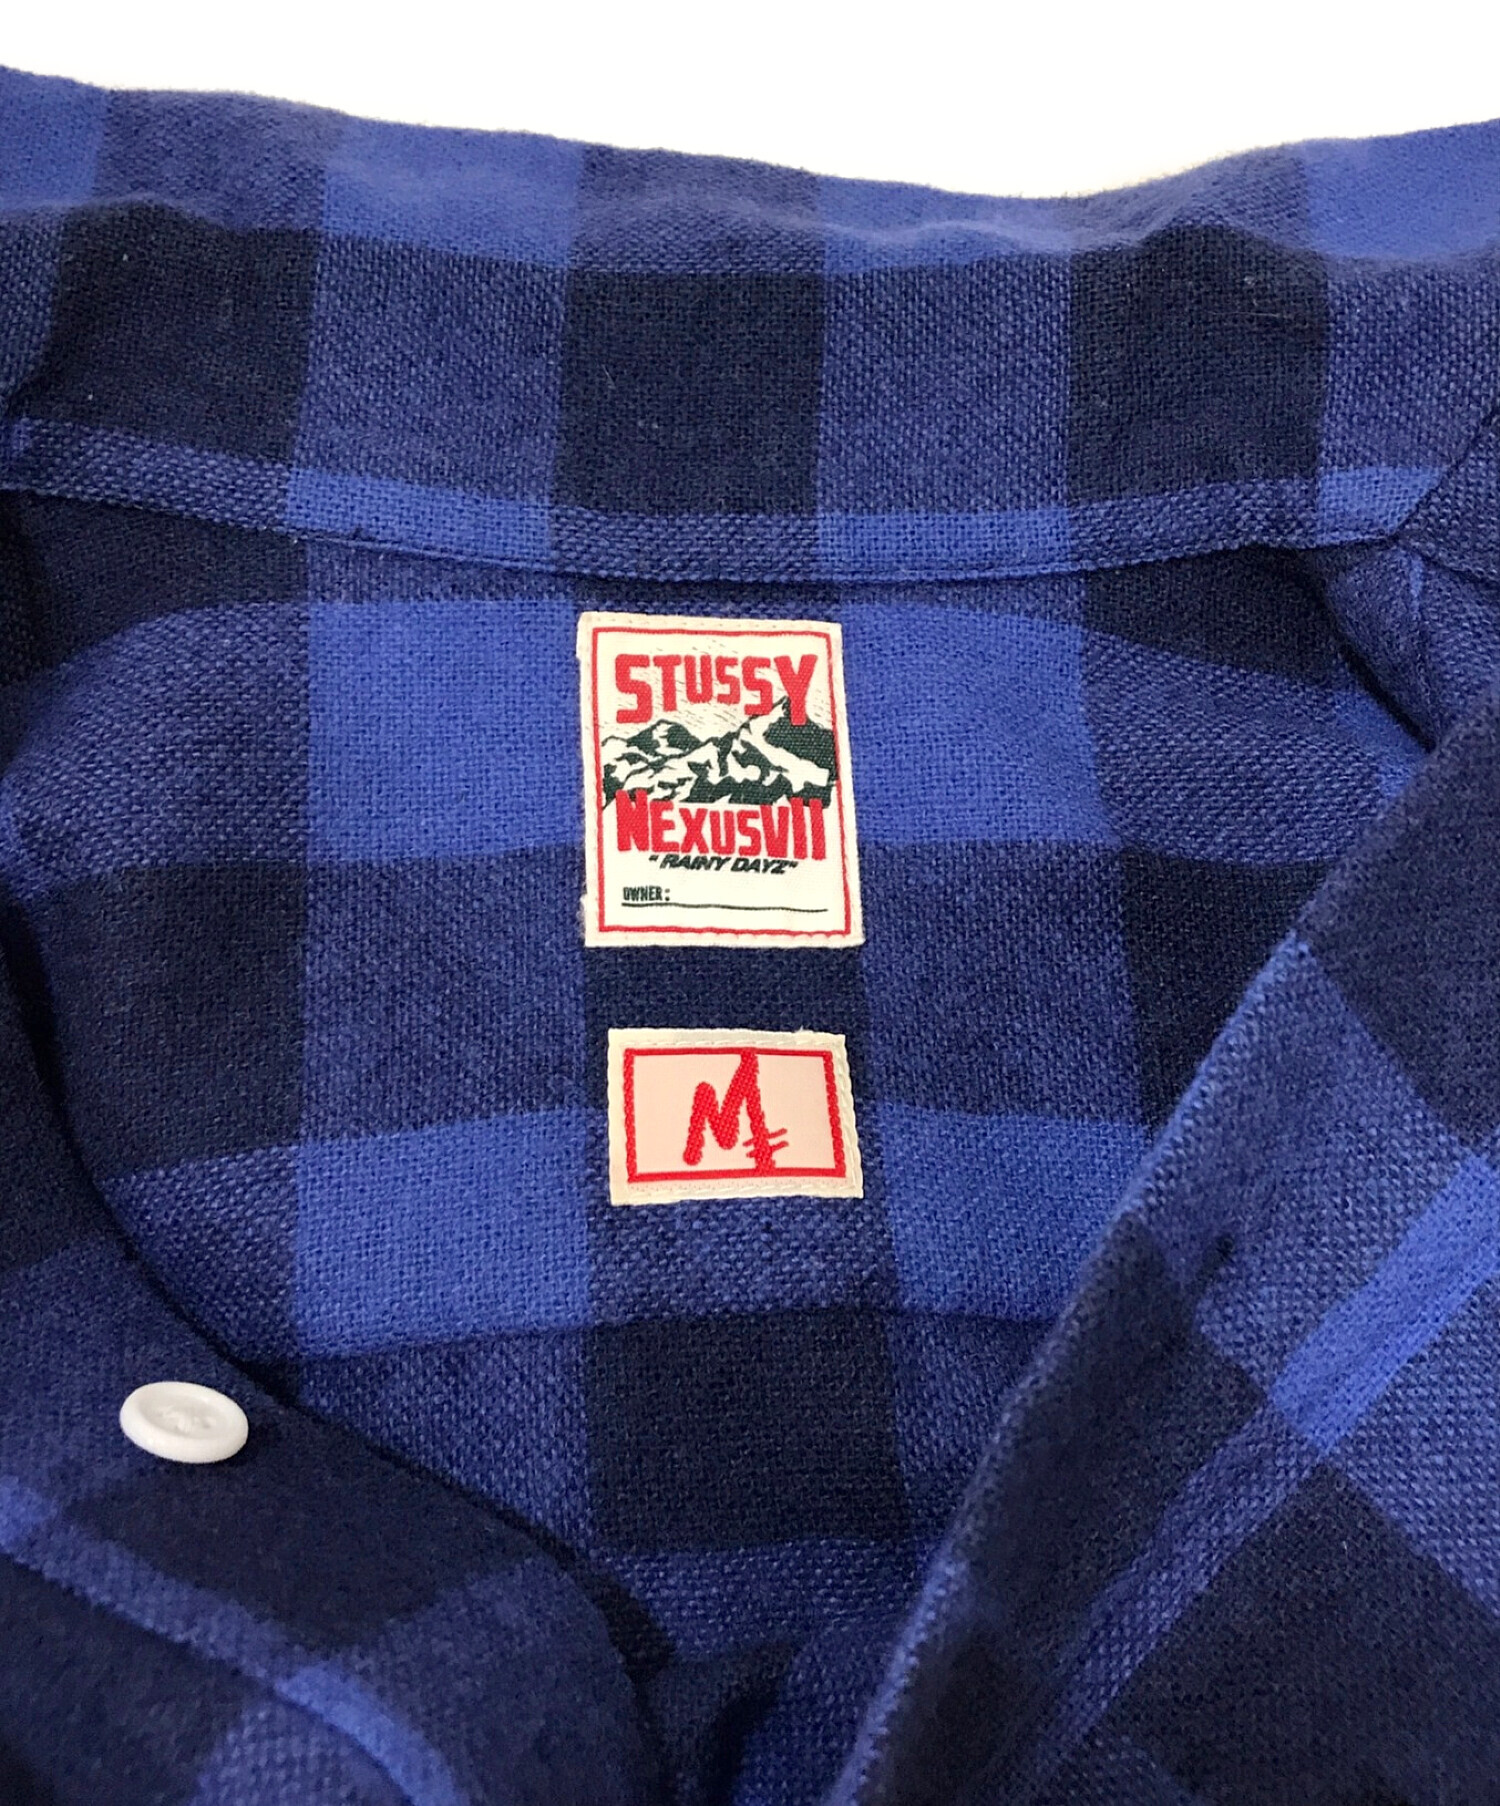 stussy (ステューシー) NEXUSVII (ネクサスセブン) チェックシャツ ブルー サイズ:M